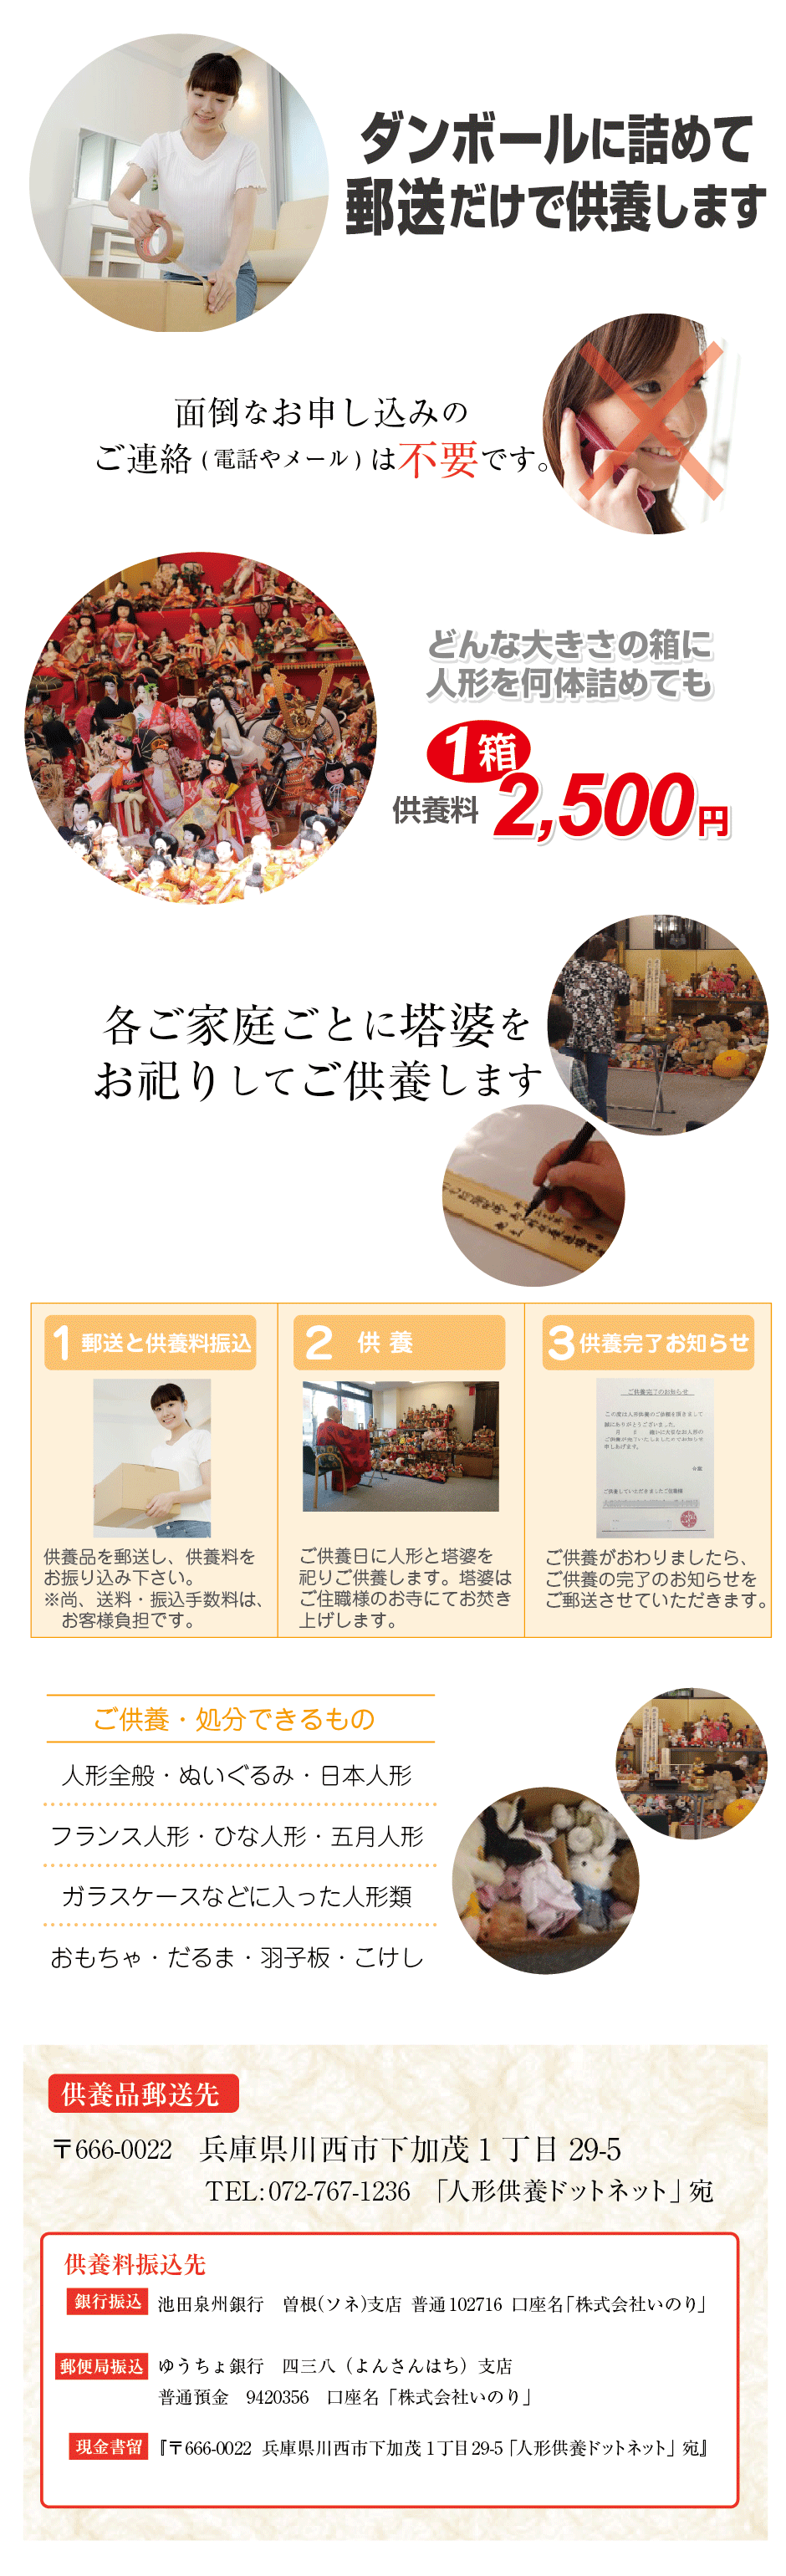 日本全国の人形供養・人形処分の手順